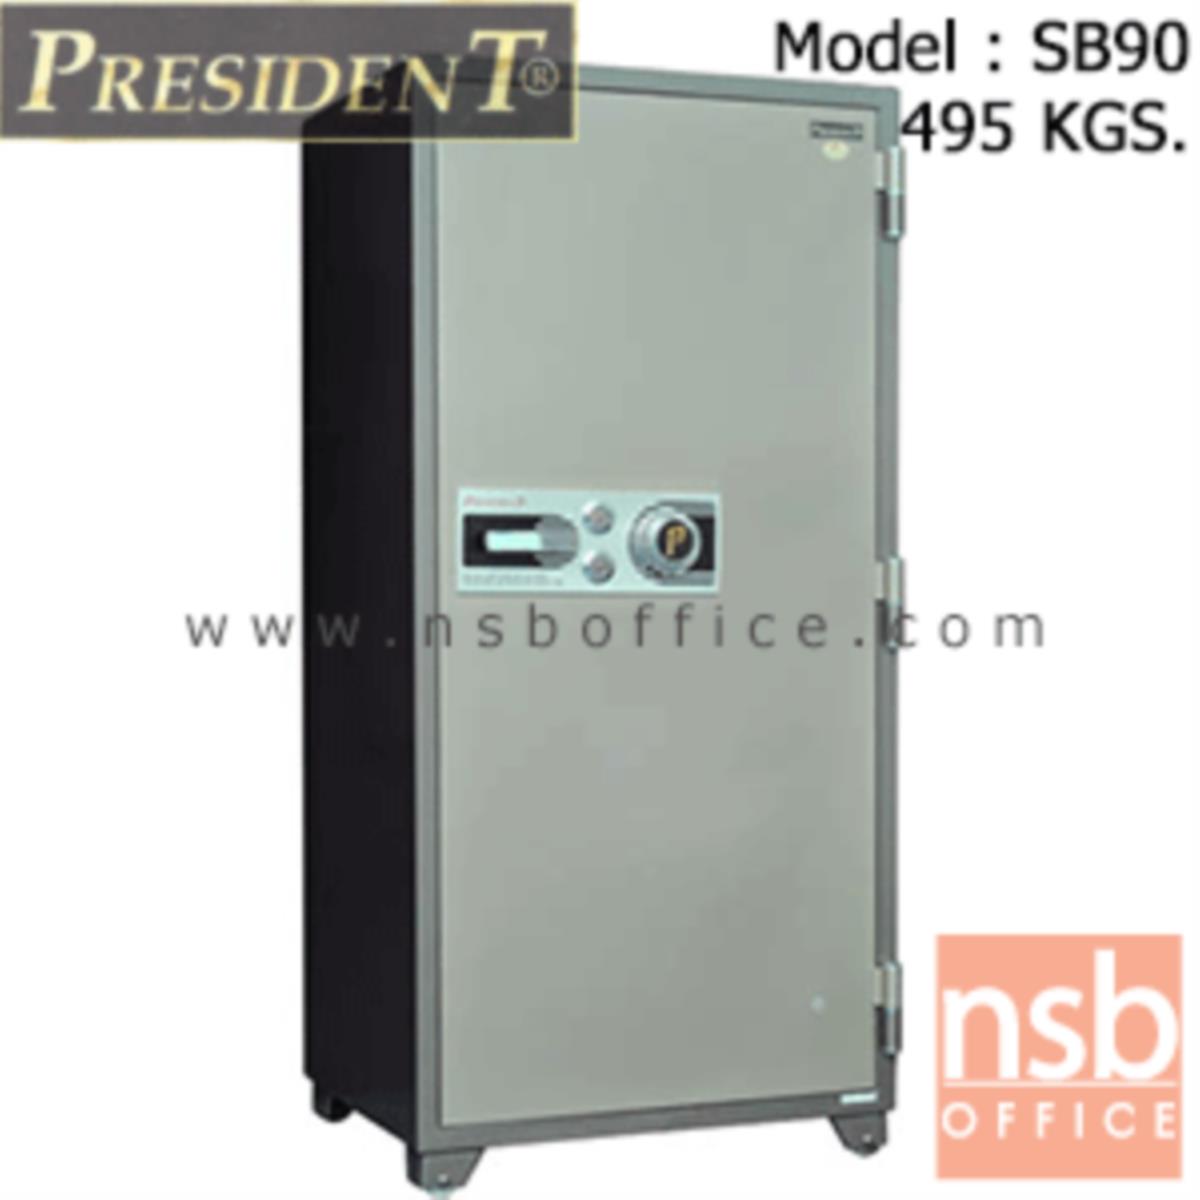 F05A029:ตู้เซฟนิรภัยชนิดหมุน 495 กก. รุ่น PRESIDENT-SB90 มี 2 กุญแจ 1 รหัส (รหัสใช้หมุนหน้าตู้)   